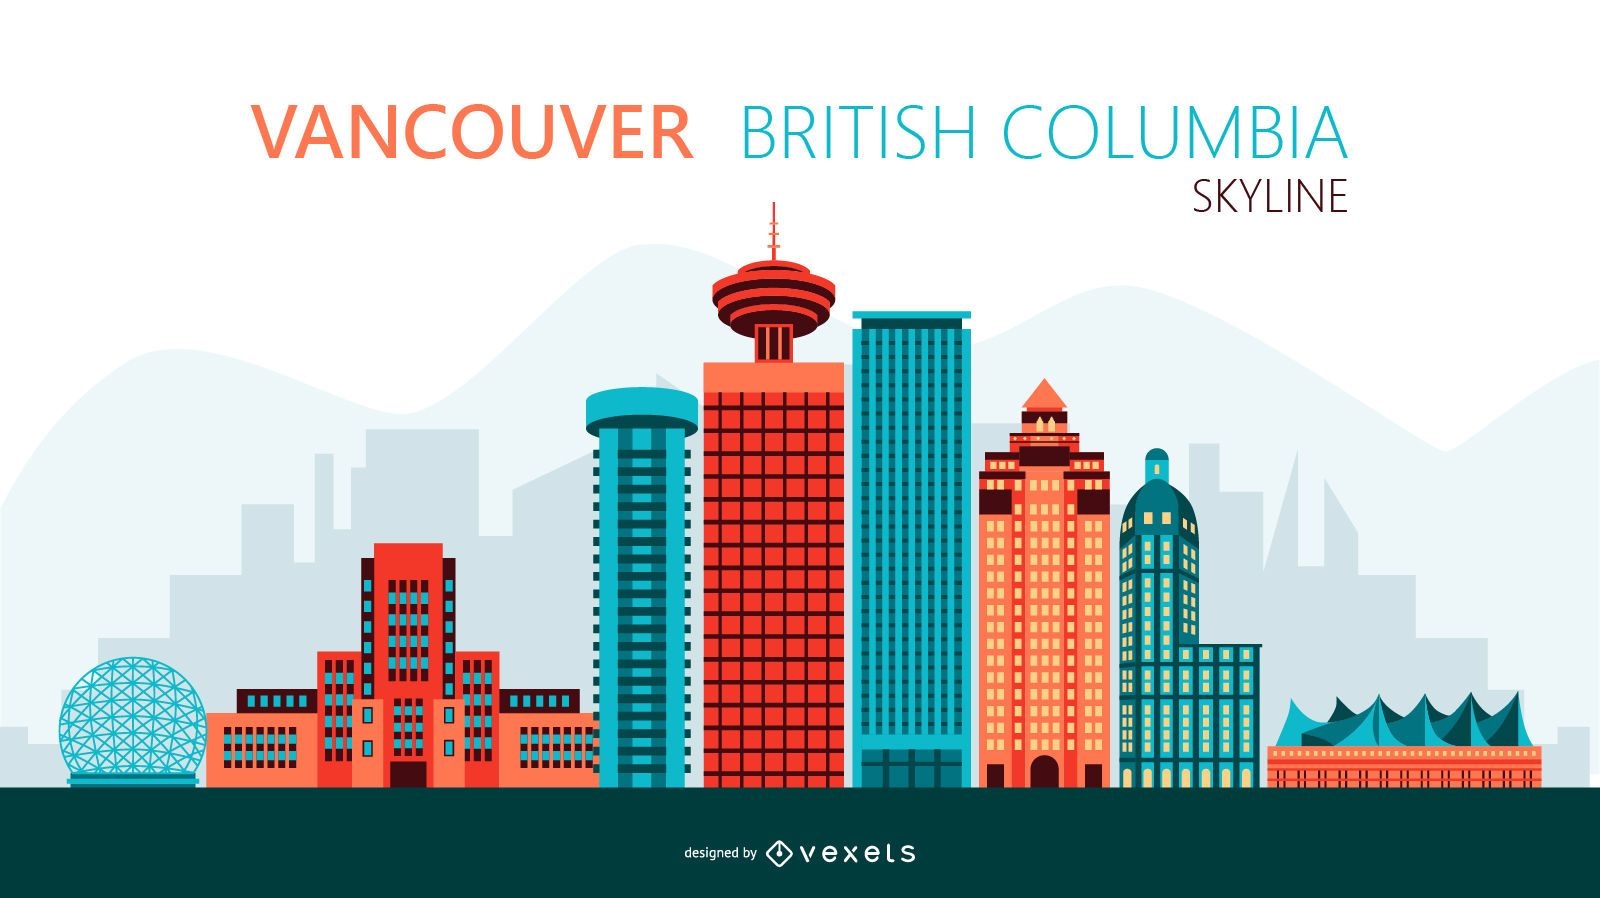 Vancouver skyline illustration